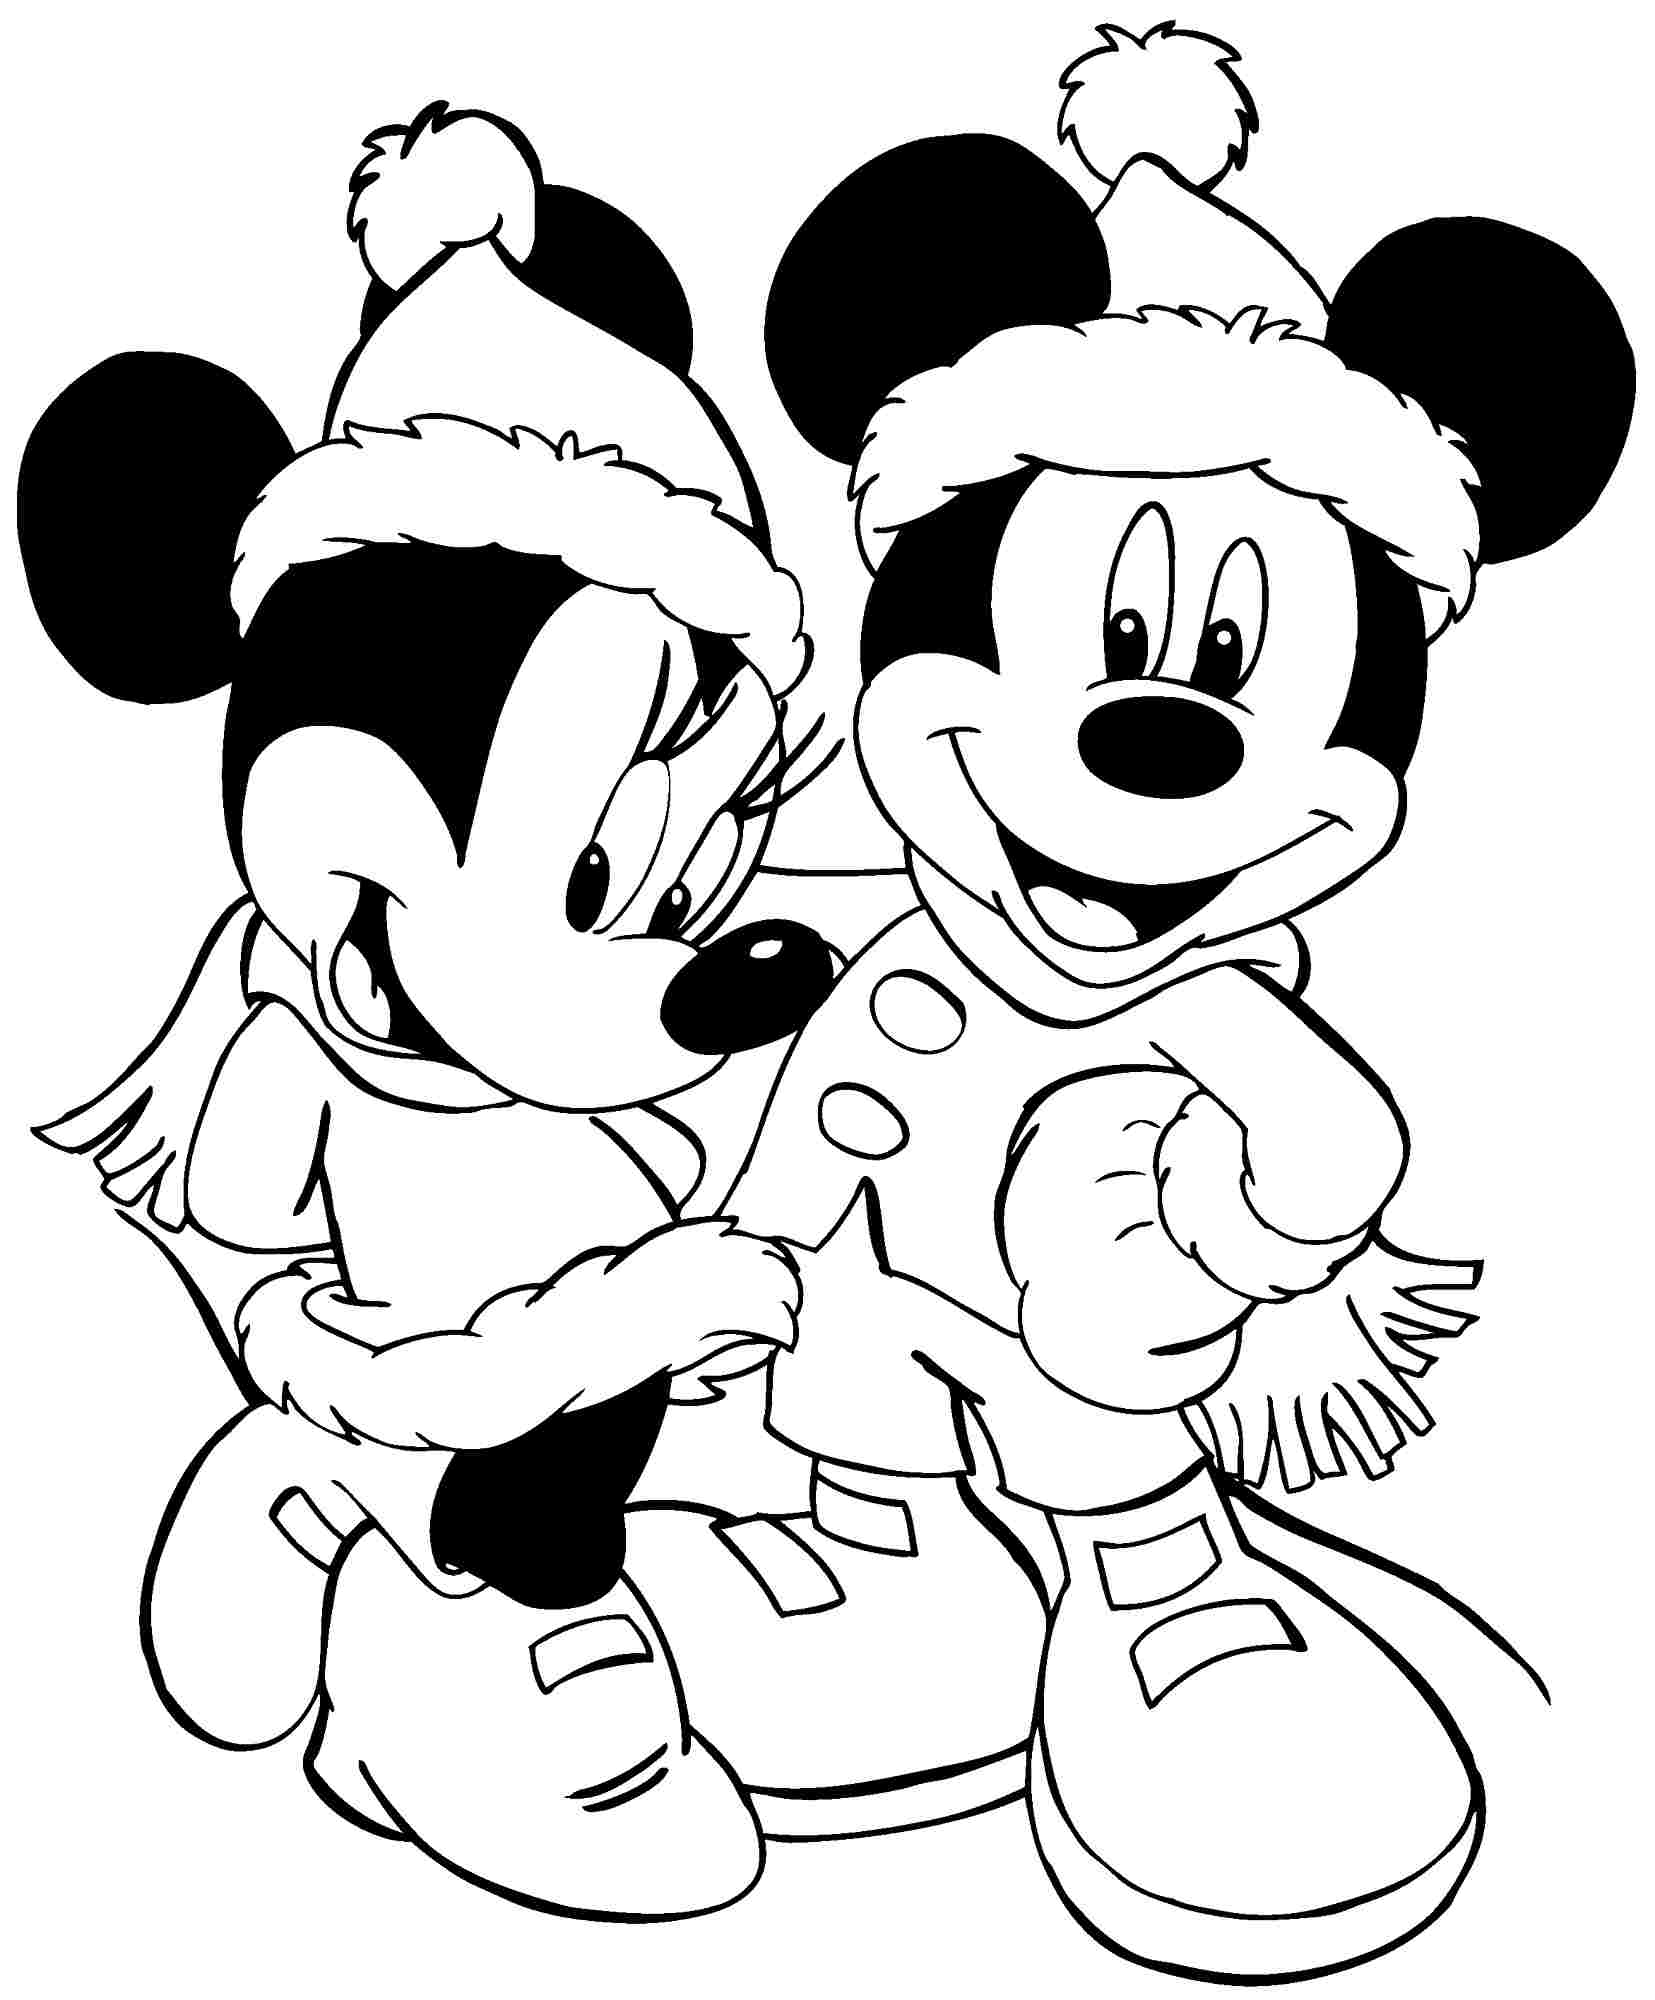 Tranh tô màu chuột Mickey và bạn gái mặc đồ rất ấm